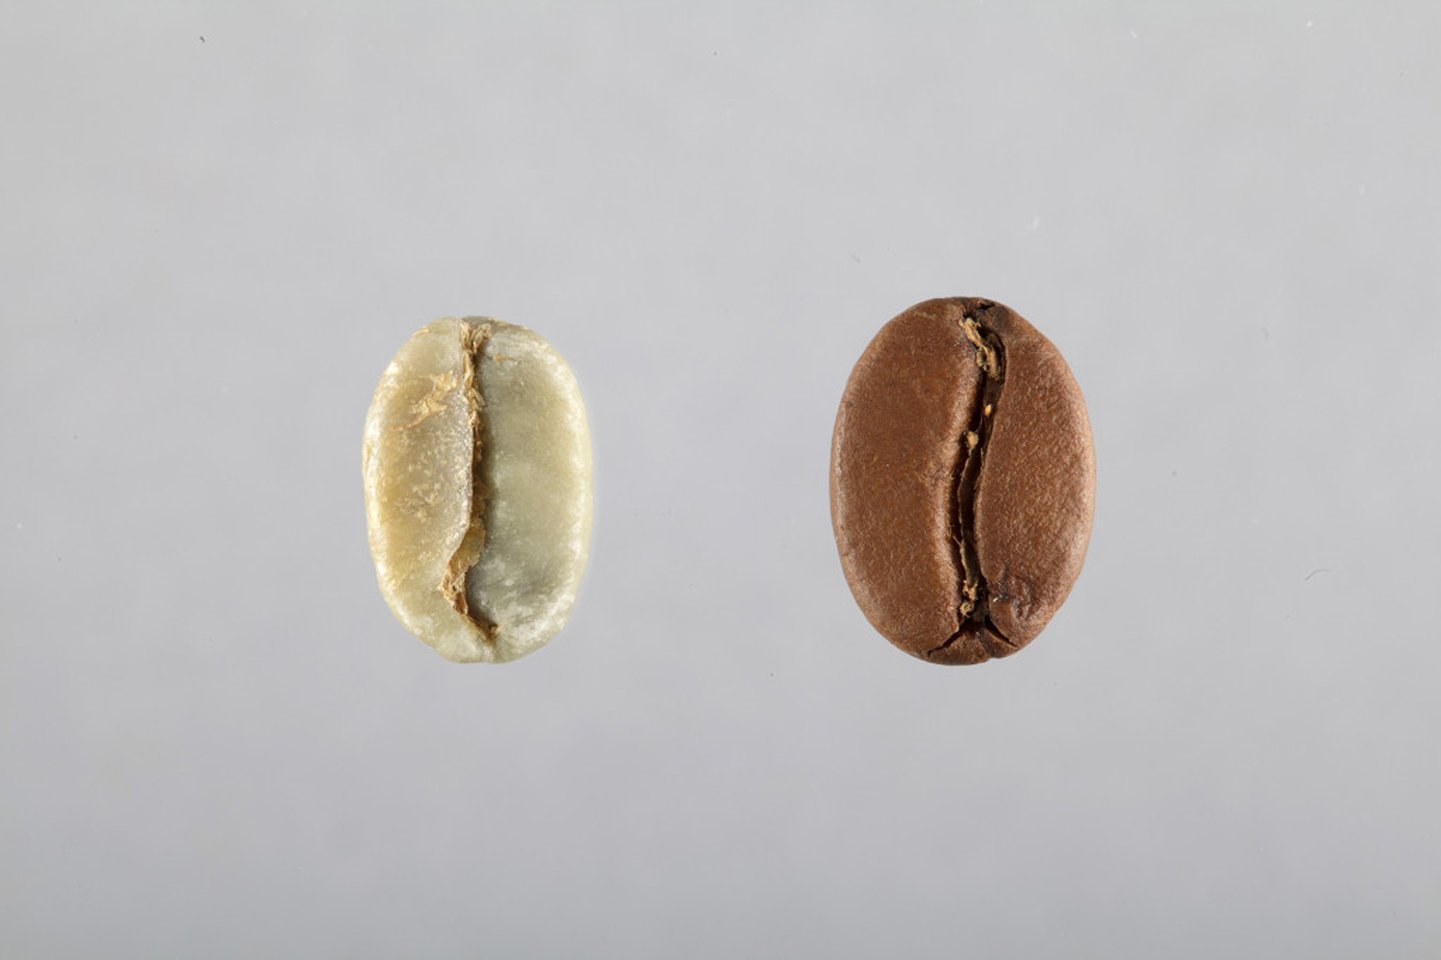 Vente ligne café grain noisette, artisan torréfacteur, café